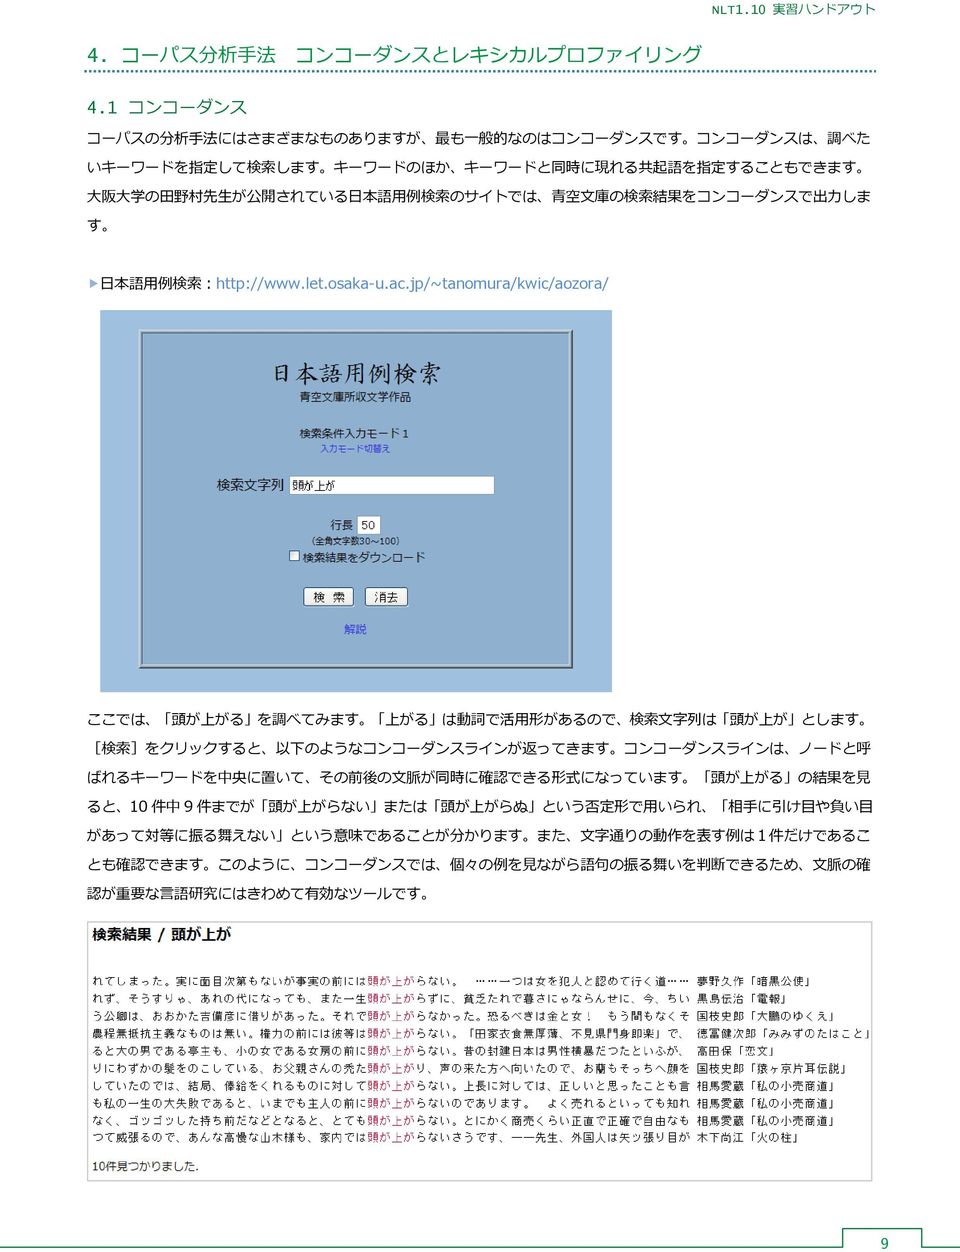 のサイトでは 青 空 文 庫 の 検 索 結 果 をコンコーダンスで 出 力 しま す 日 本 語 用 例 検 索 :http://www.let.osaka-u.ac.